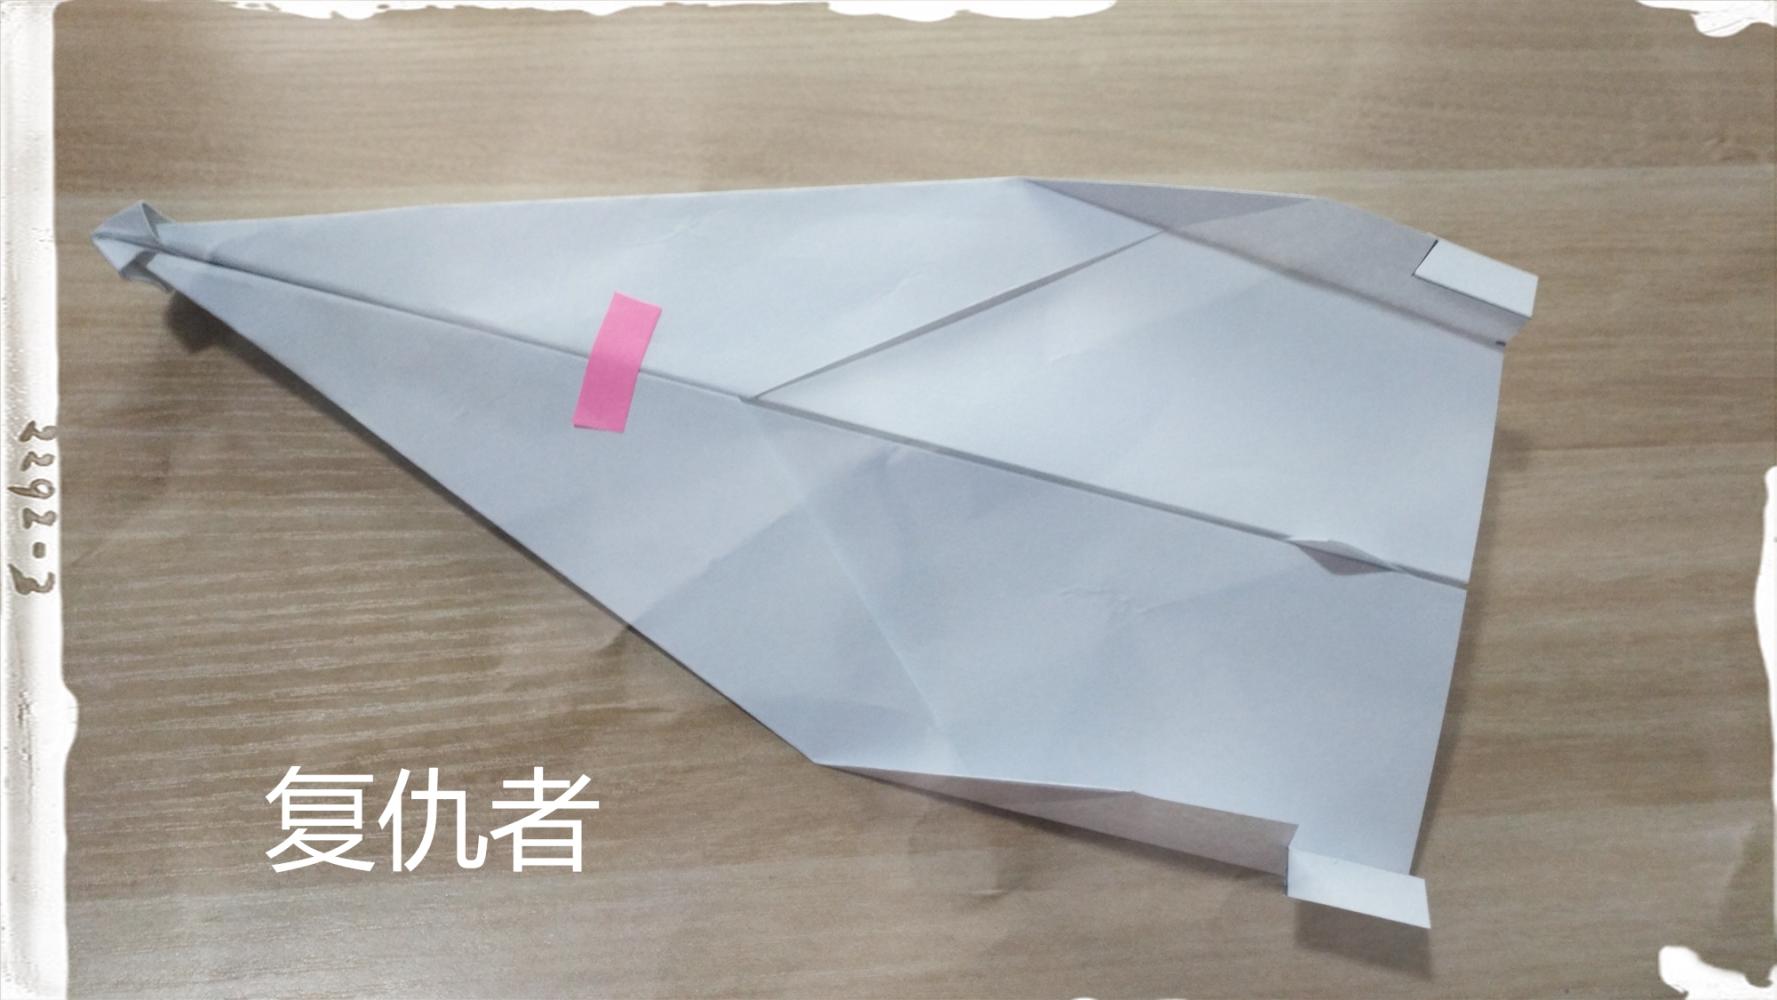 [纸飞机怎么视频聊天]纸飞机聊天app叫啥